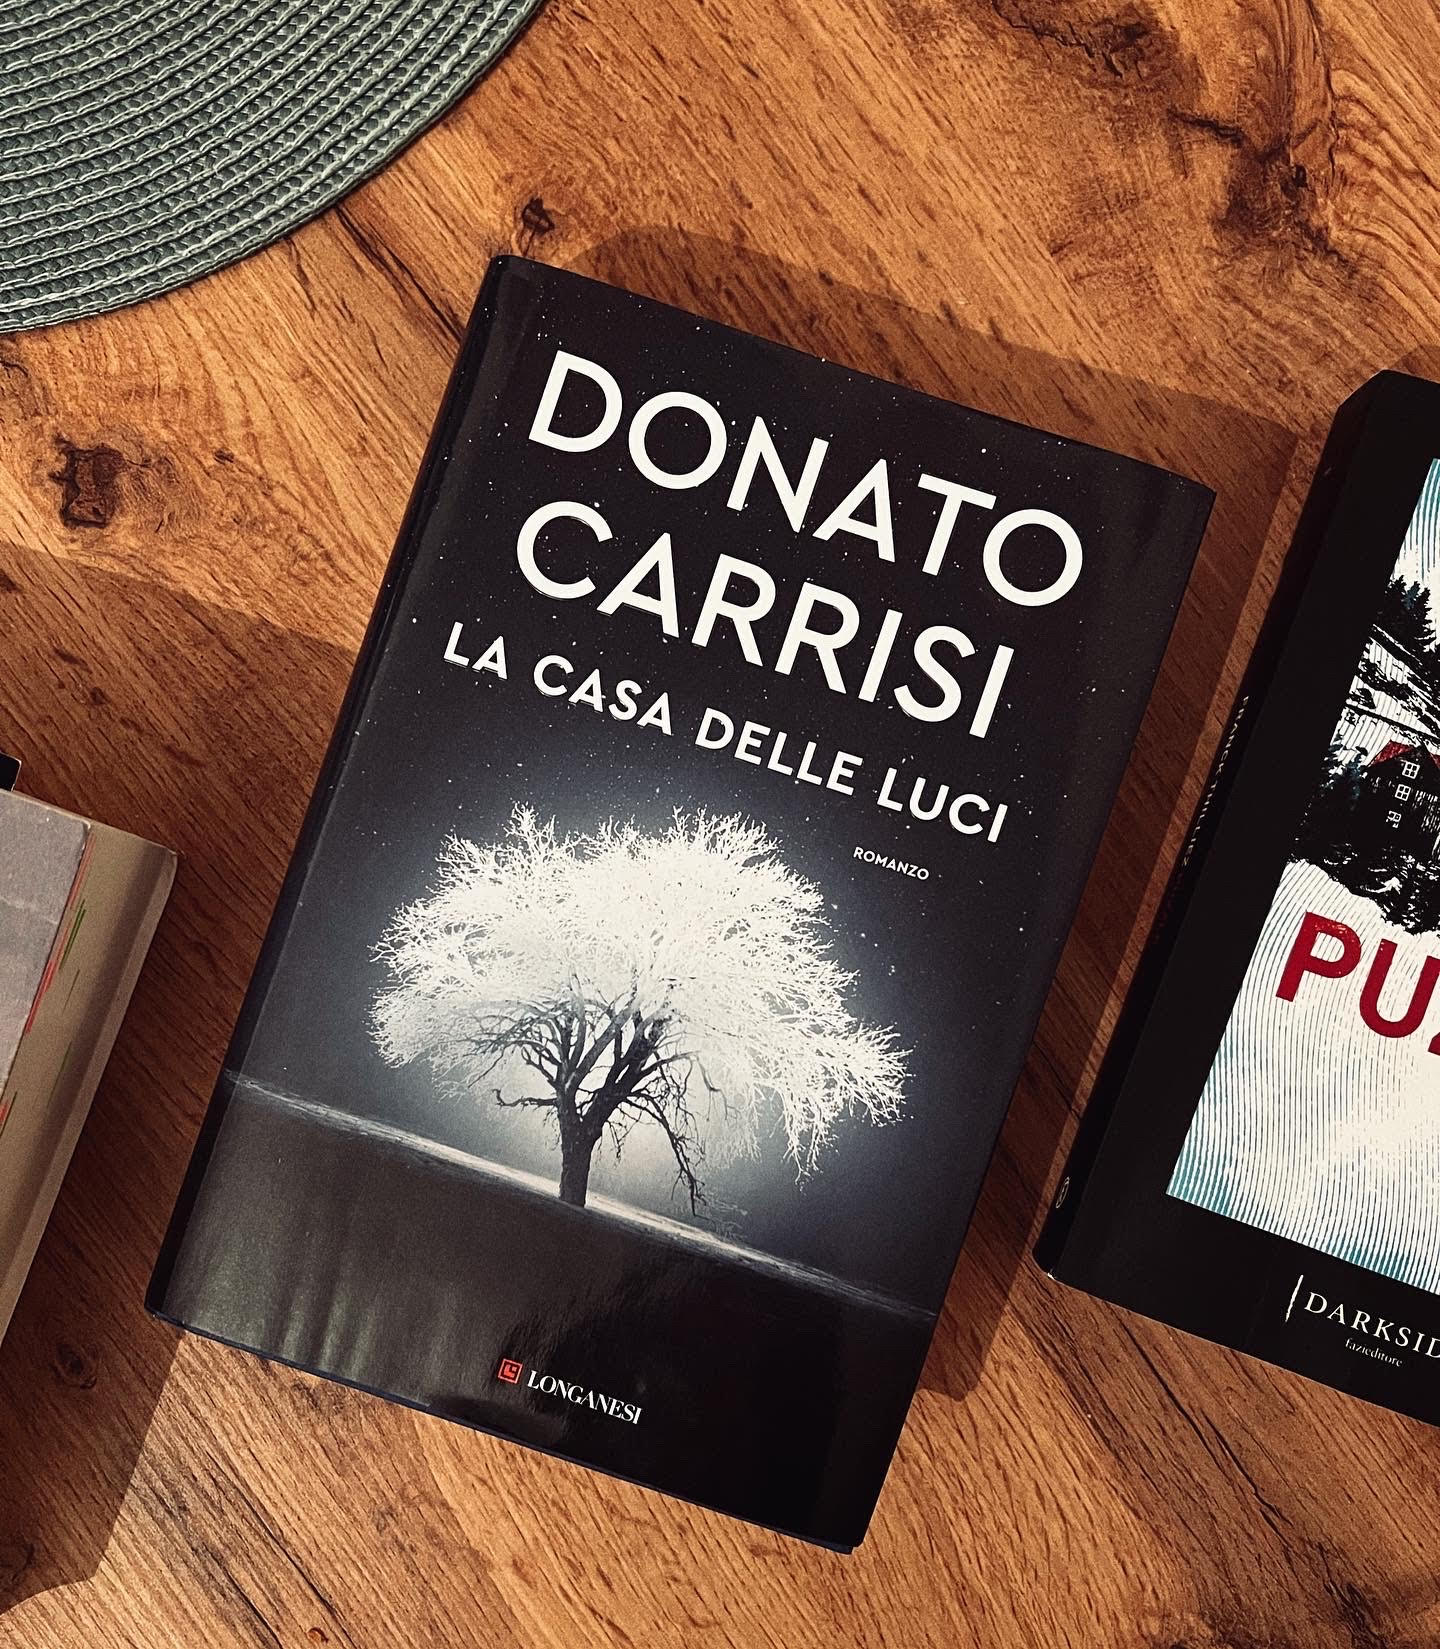 La casa delle luci eBook by Donato Carrisi - EPUB Book